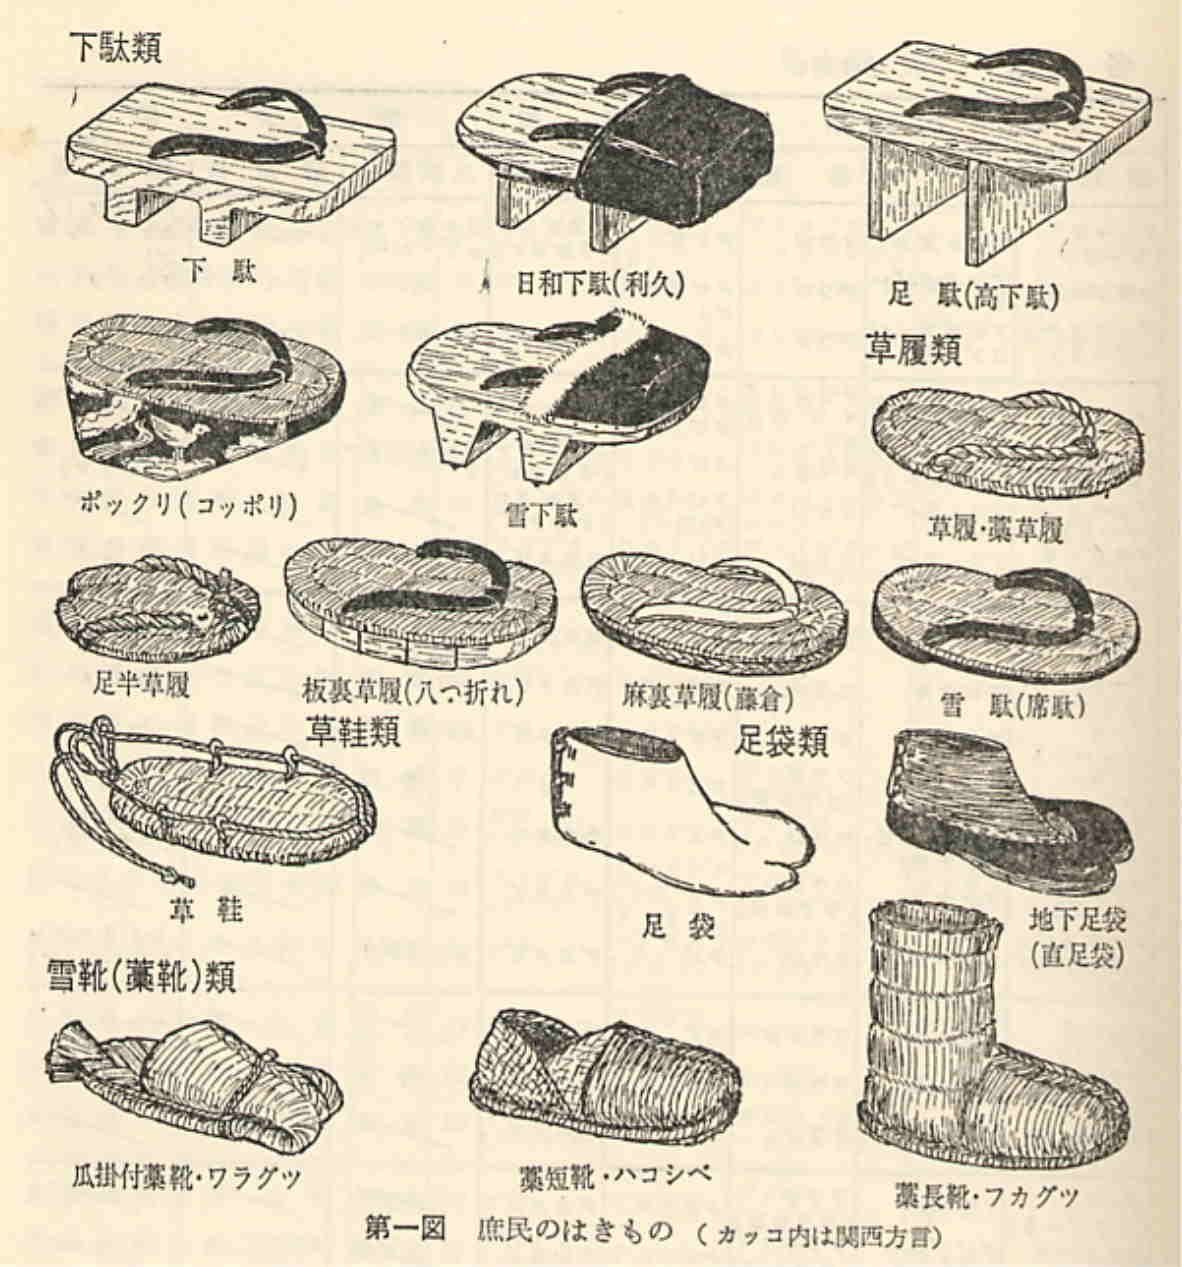 обувь из японии